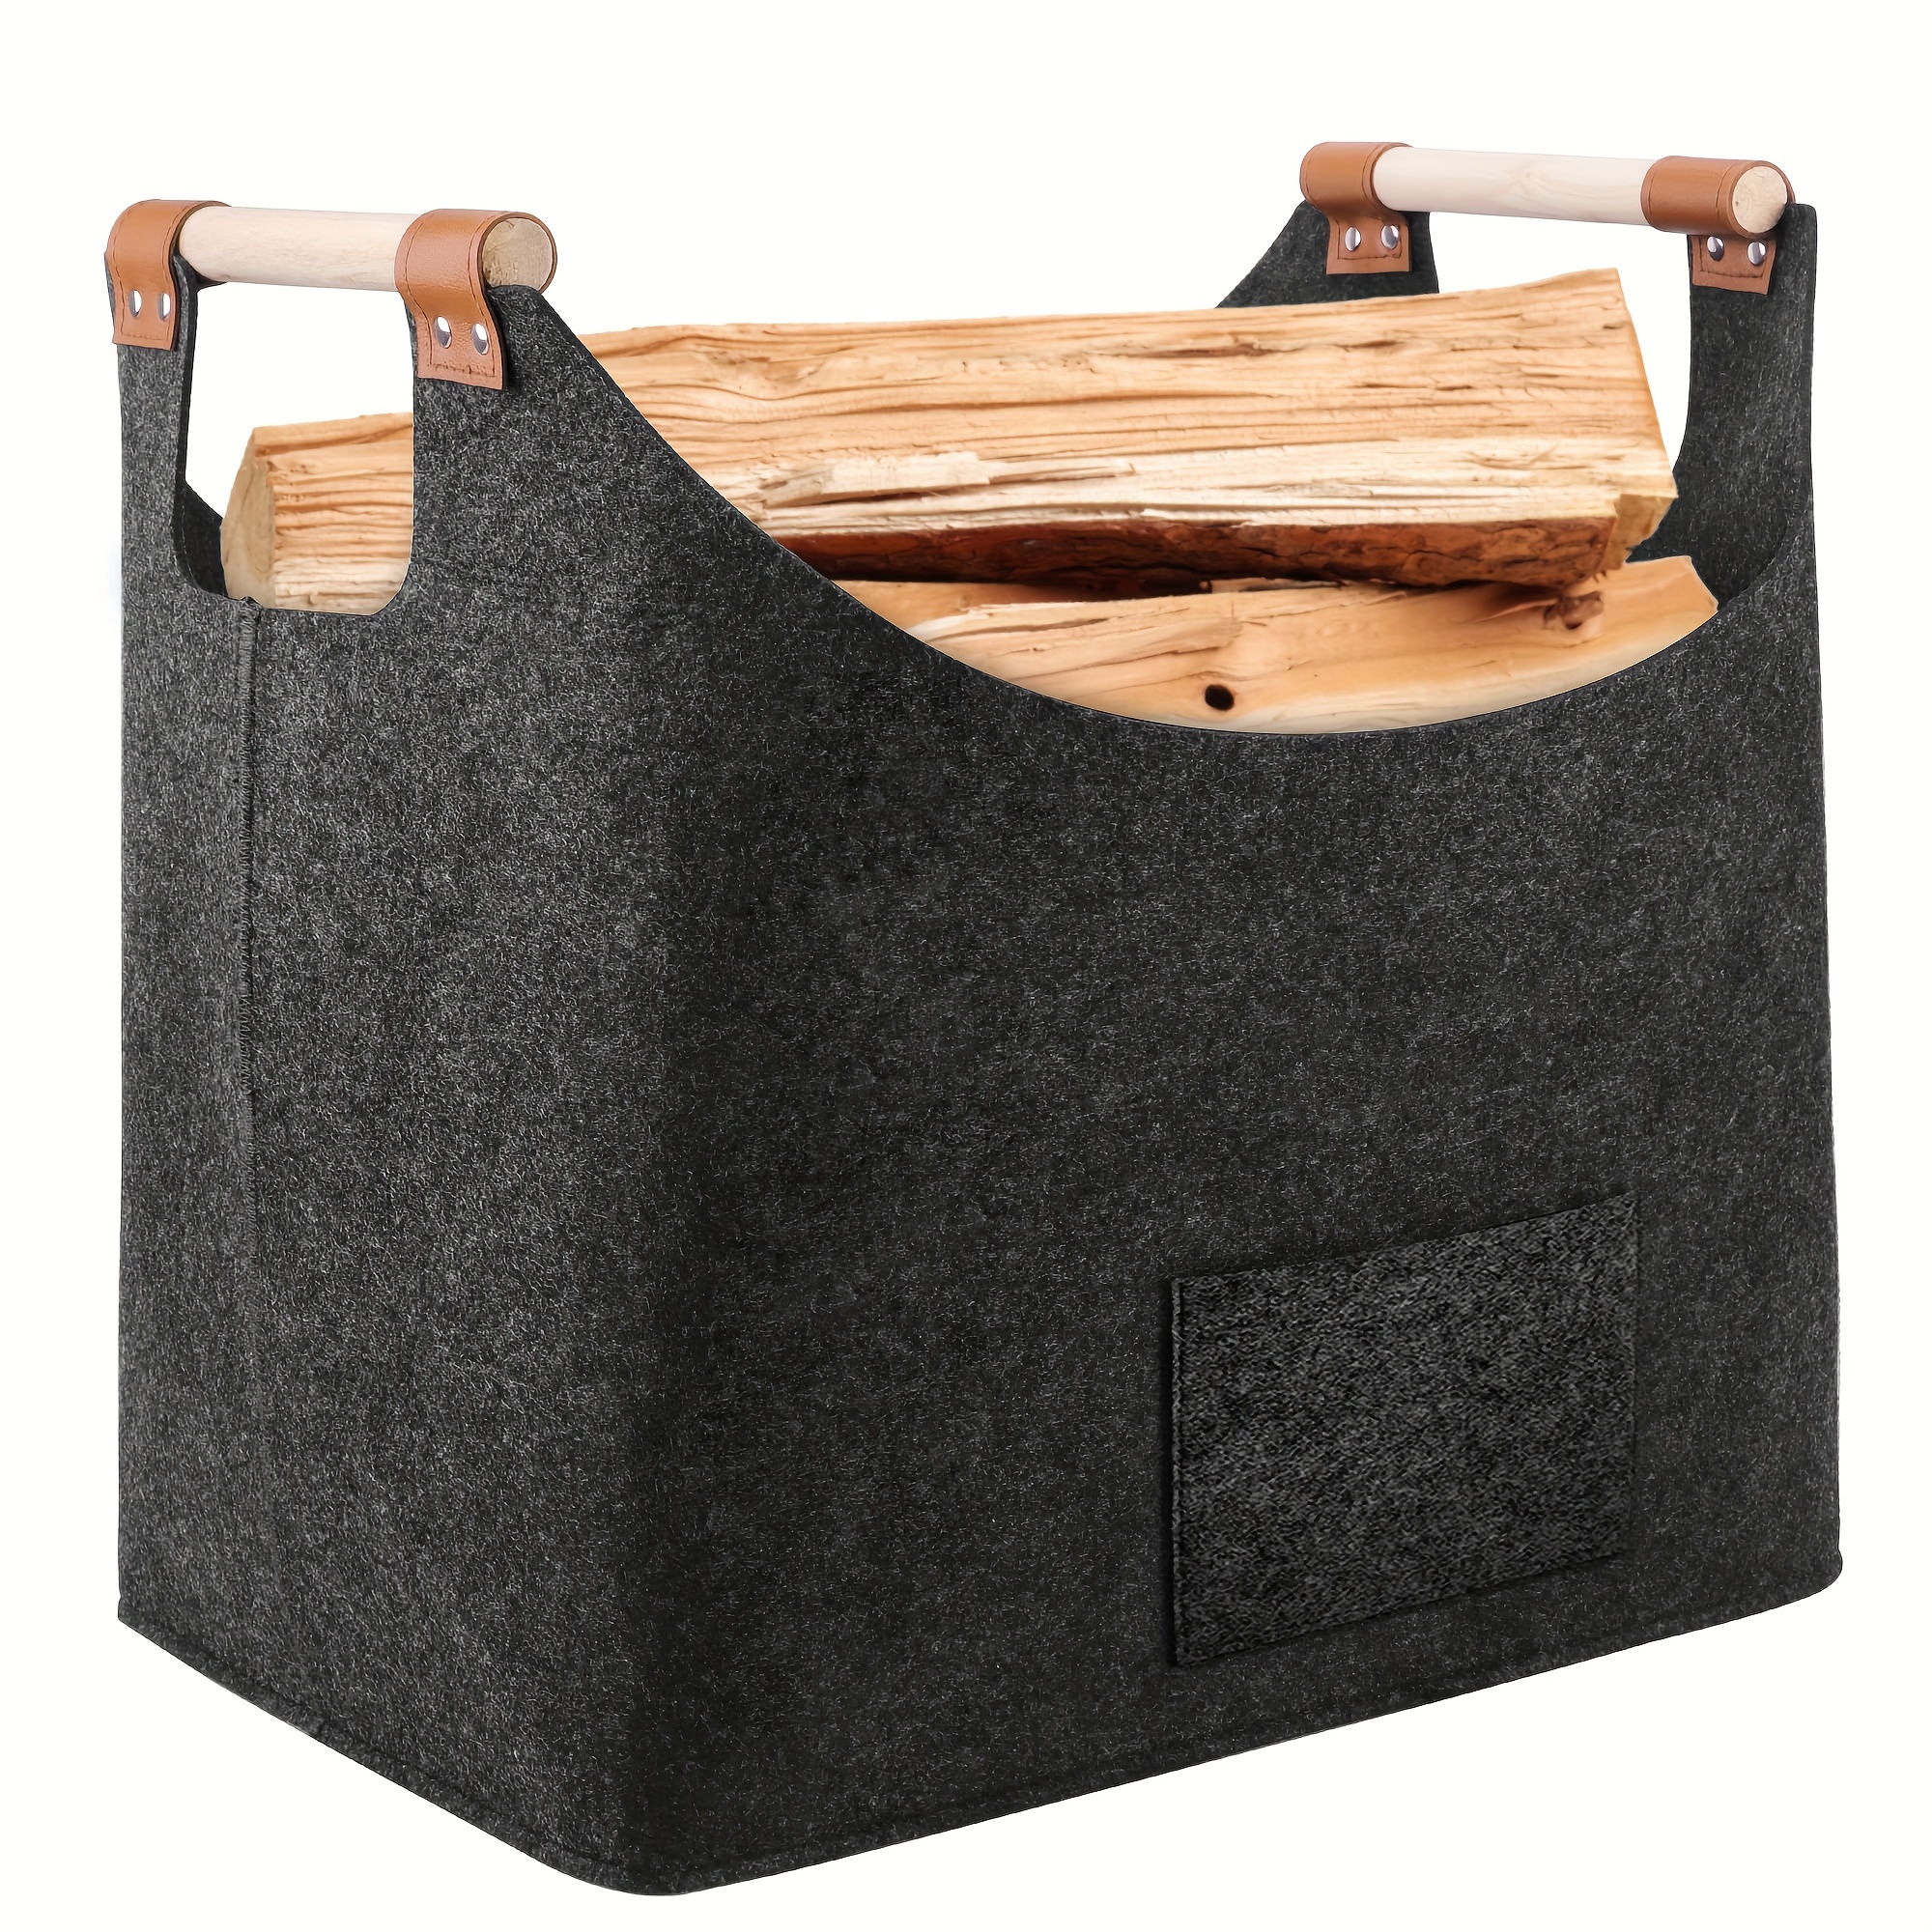 Firewood Basket,Wood Basket Felt Bag Felt Firewood Basket Portable Outdoor  Thickened Toys Storage Basket With Reinforced Handle,Firewood Log Carrier